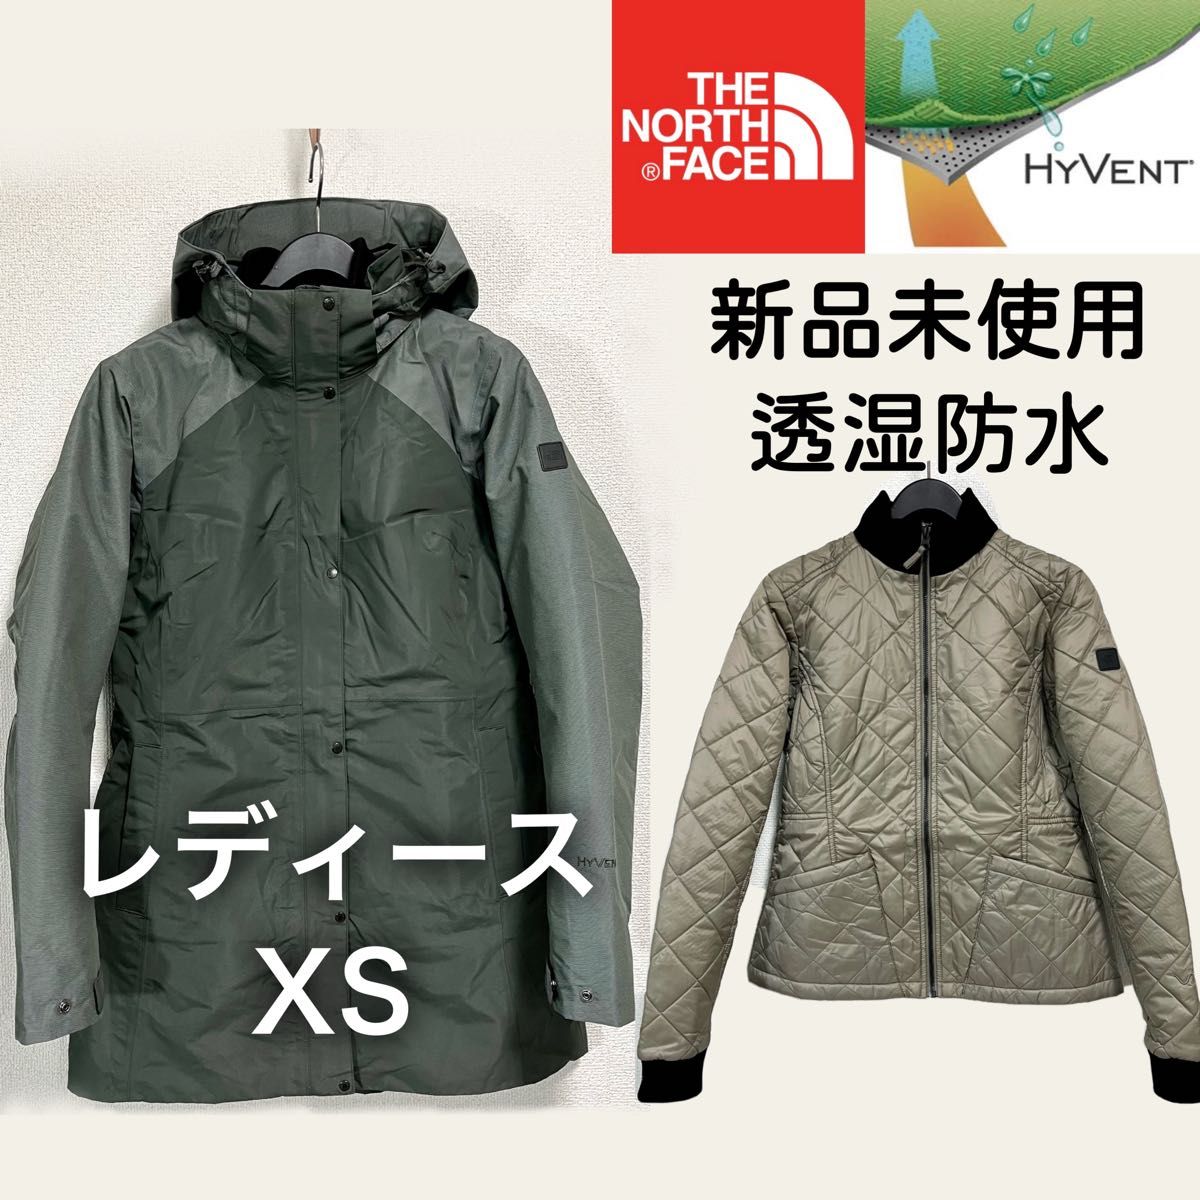 選ぶなら 日本未発 ノースフェイス マウンテンジャケット 透湿防水 フード着脱可能